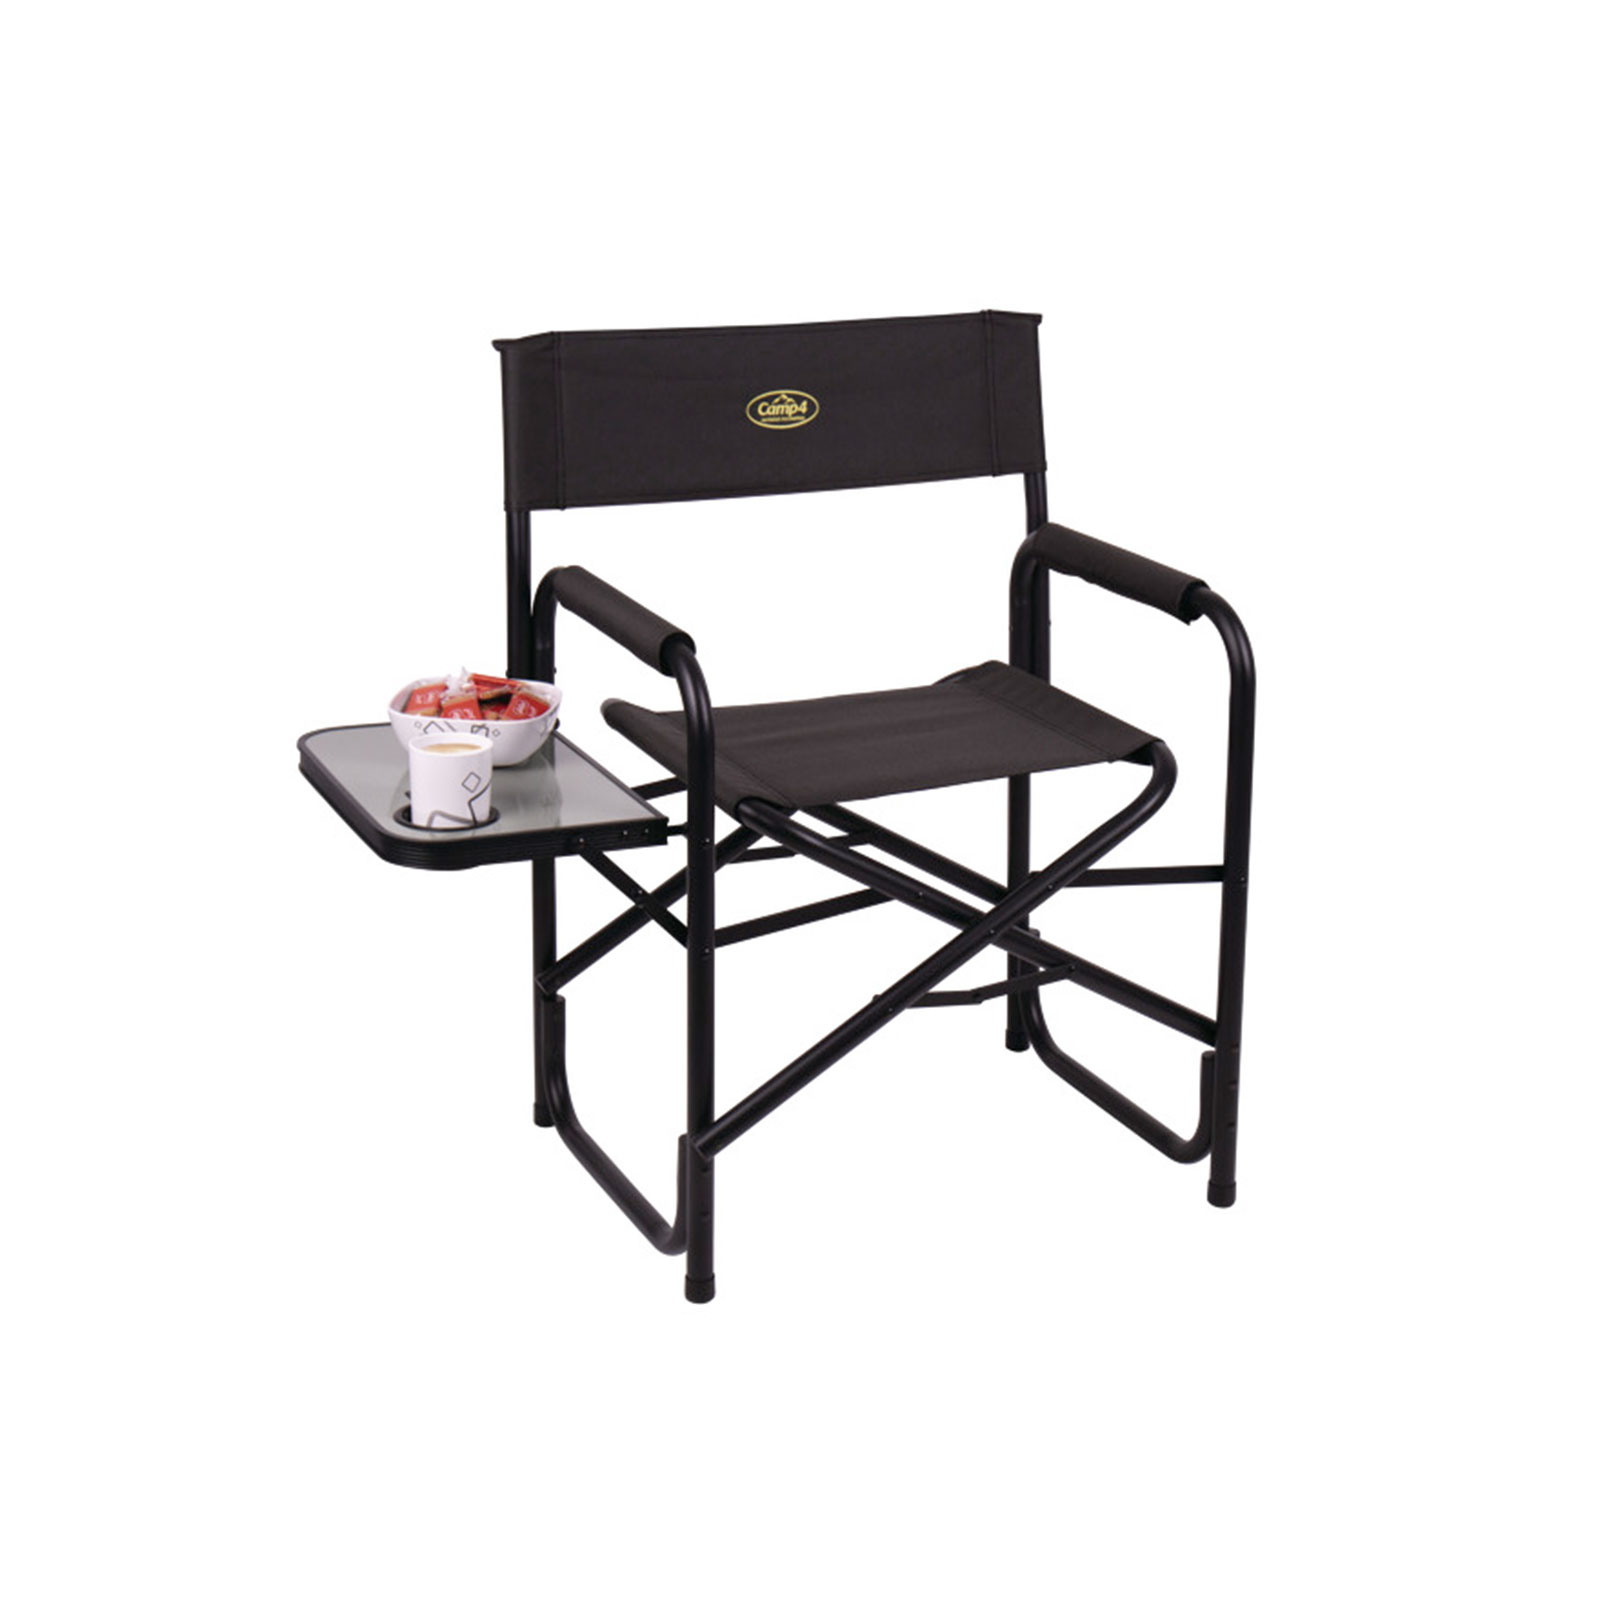 Campingstuhl klappbar, schwarz, Regiestuhl mit Seitentisch und Getränkehalter